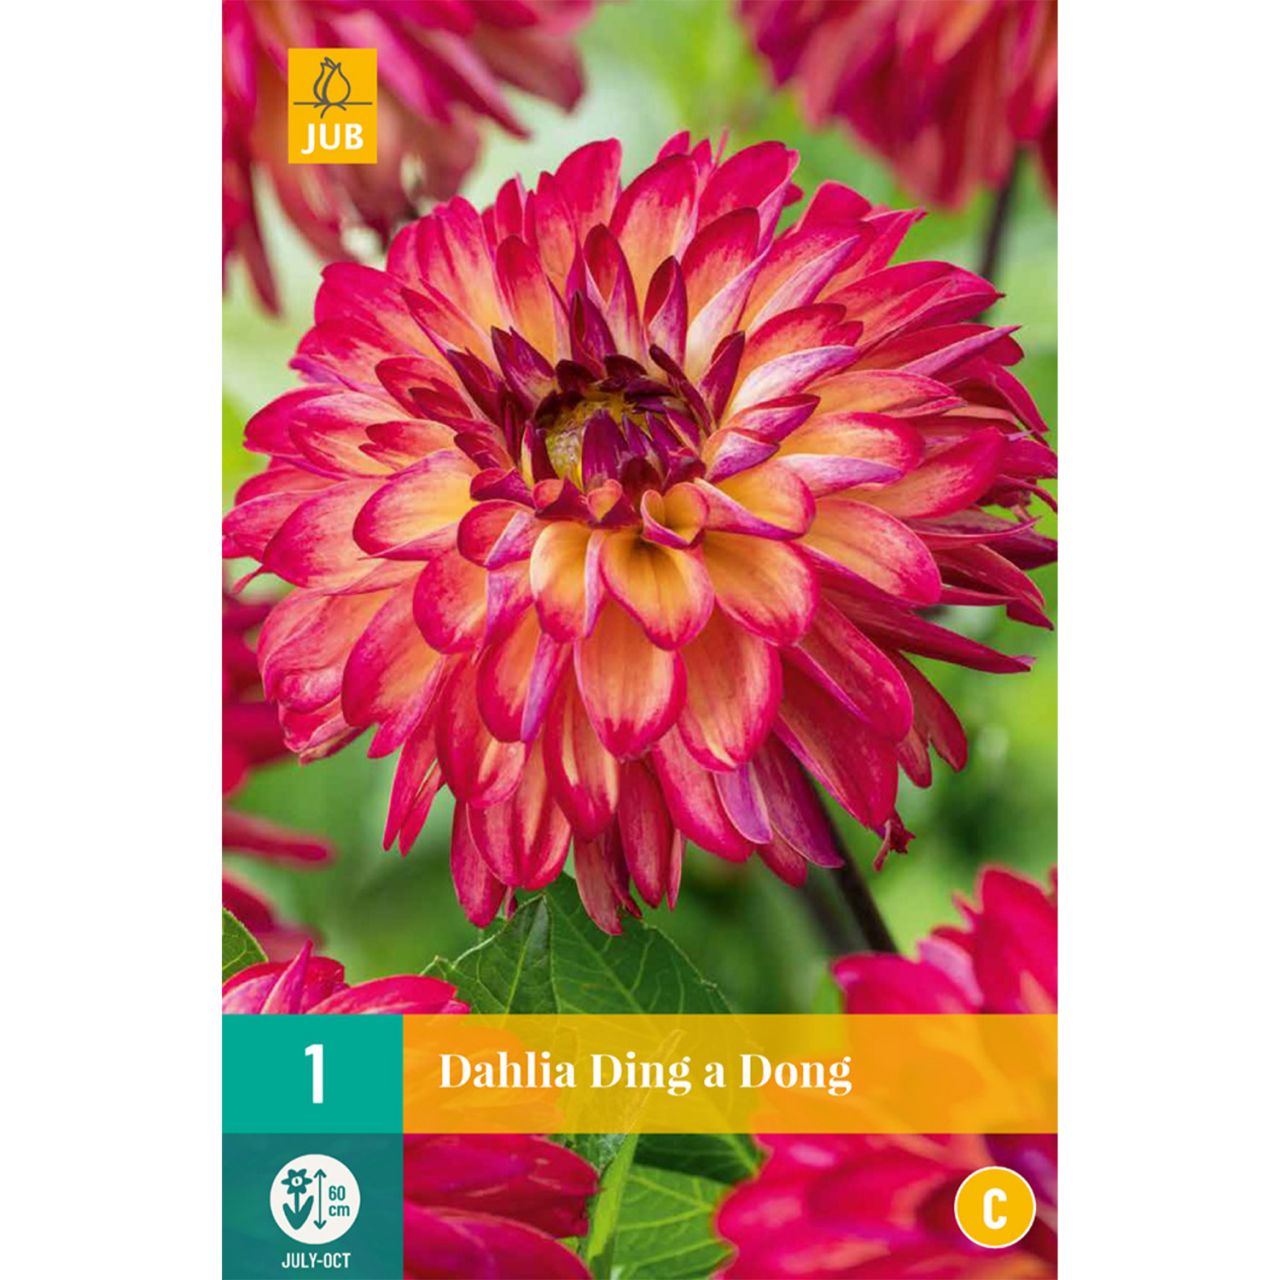 Kategorie <b>Frühlings-Blumenzwiebeln </b> - Schmuckdahlie 'Ding a Dong', 1 Stück - Dahlia 'Ding a Dong'